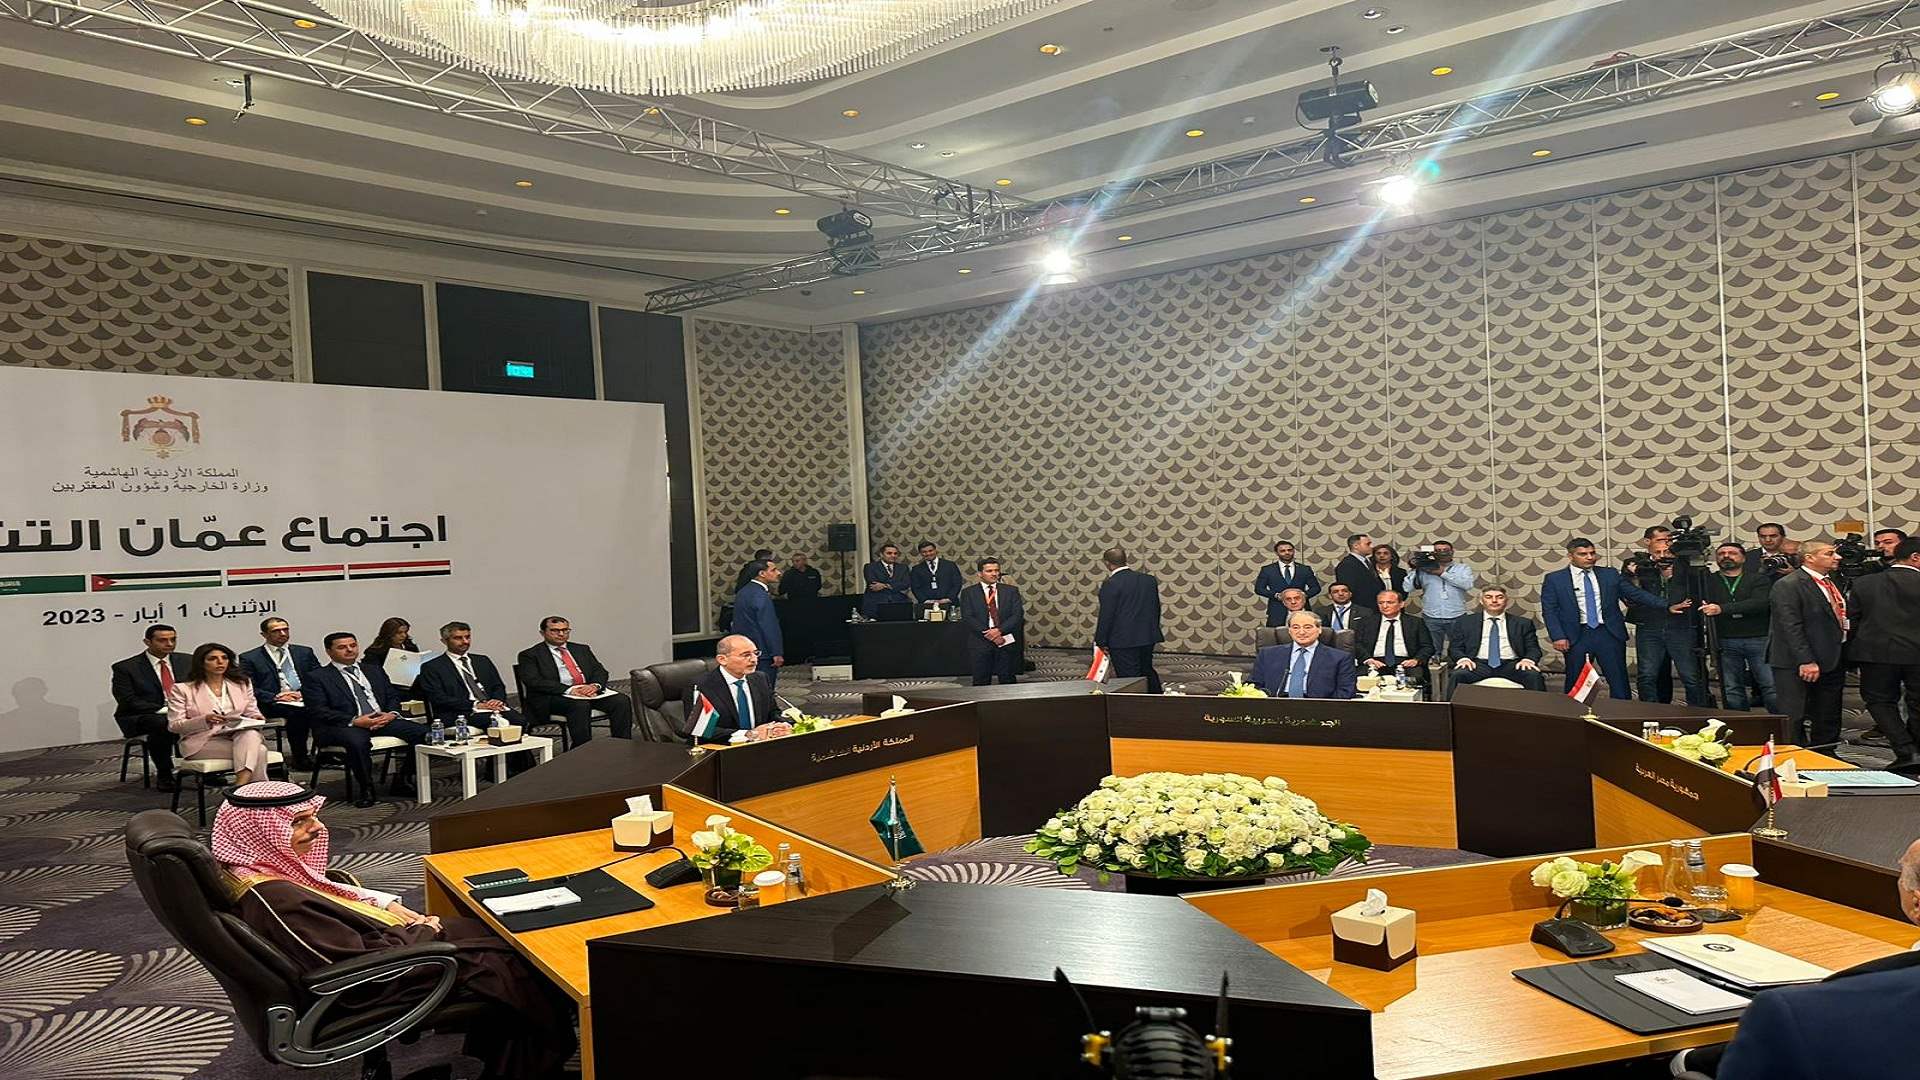  بدء الاجتماع التشاوري في عمان والذي يضم وزراء خارجية مصر والسعودية والأردن والعراق وسوريا